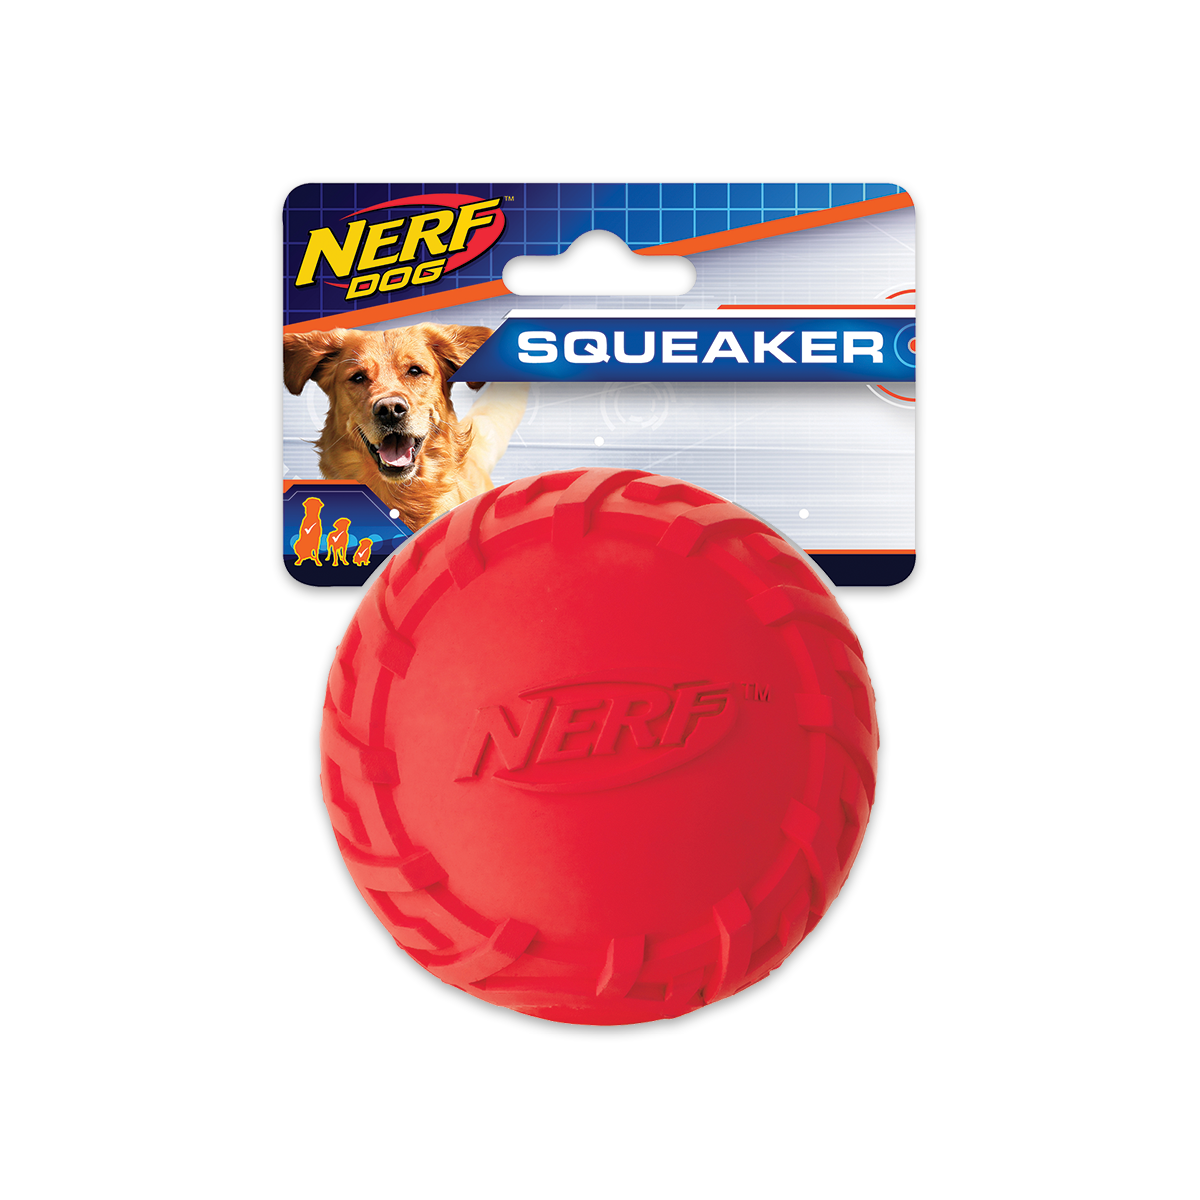 Nerf Dog Tire Squeak Ball, Medium เนิร์ฟด็อก ลูกบอลยางของเล่นสุนัข ขนาด 3 นิ้ว